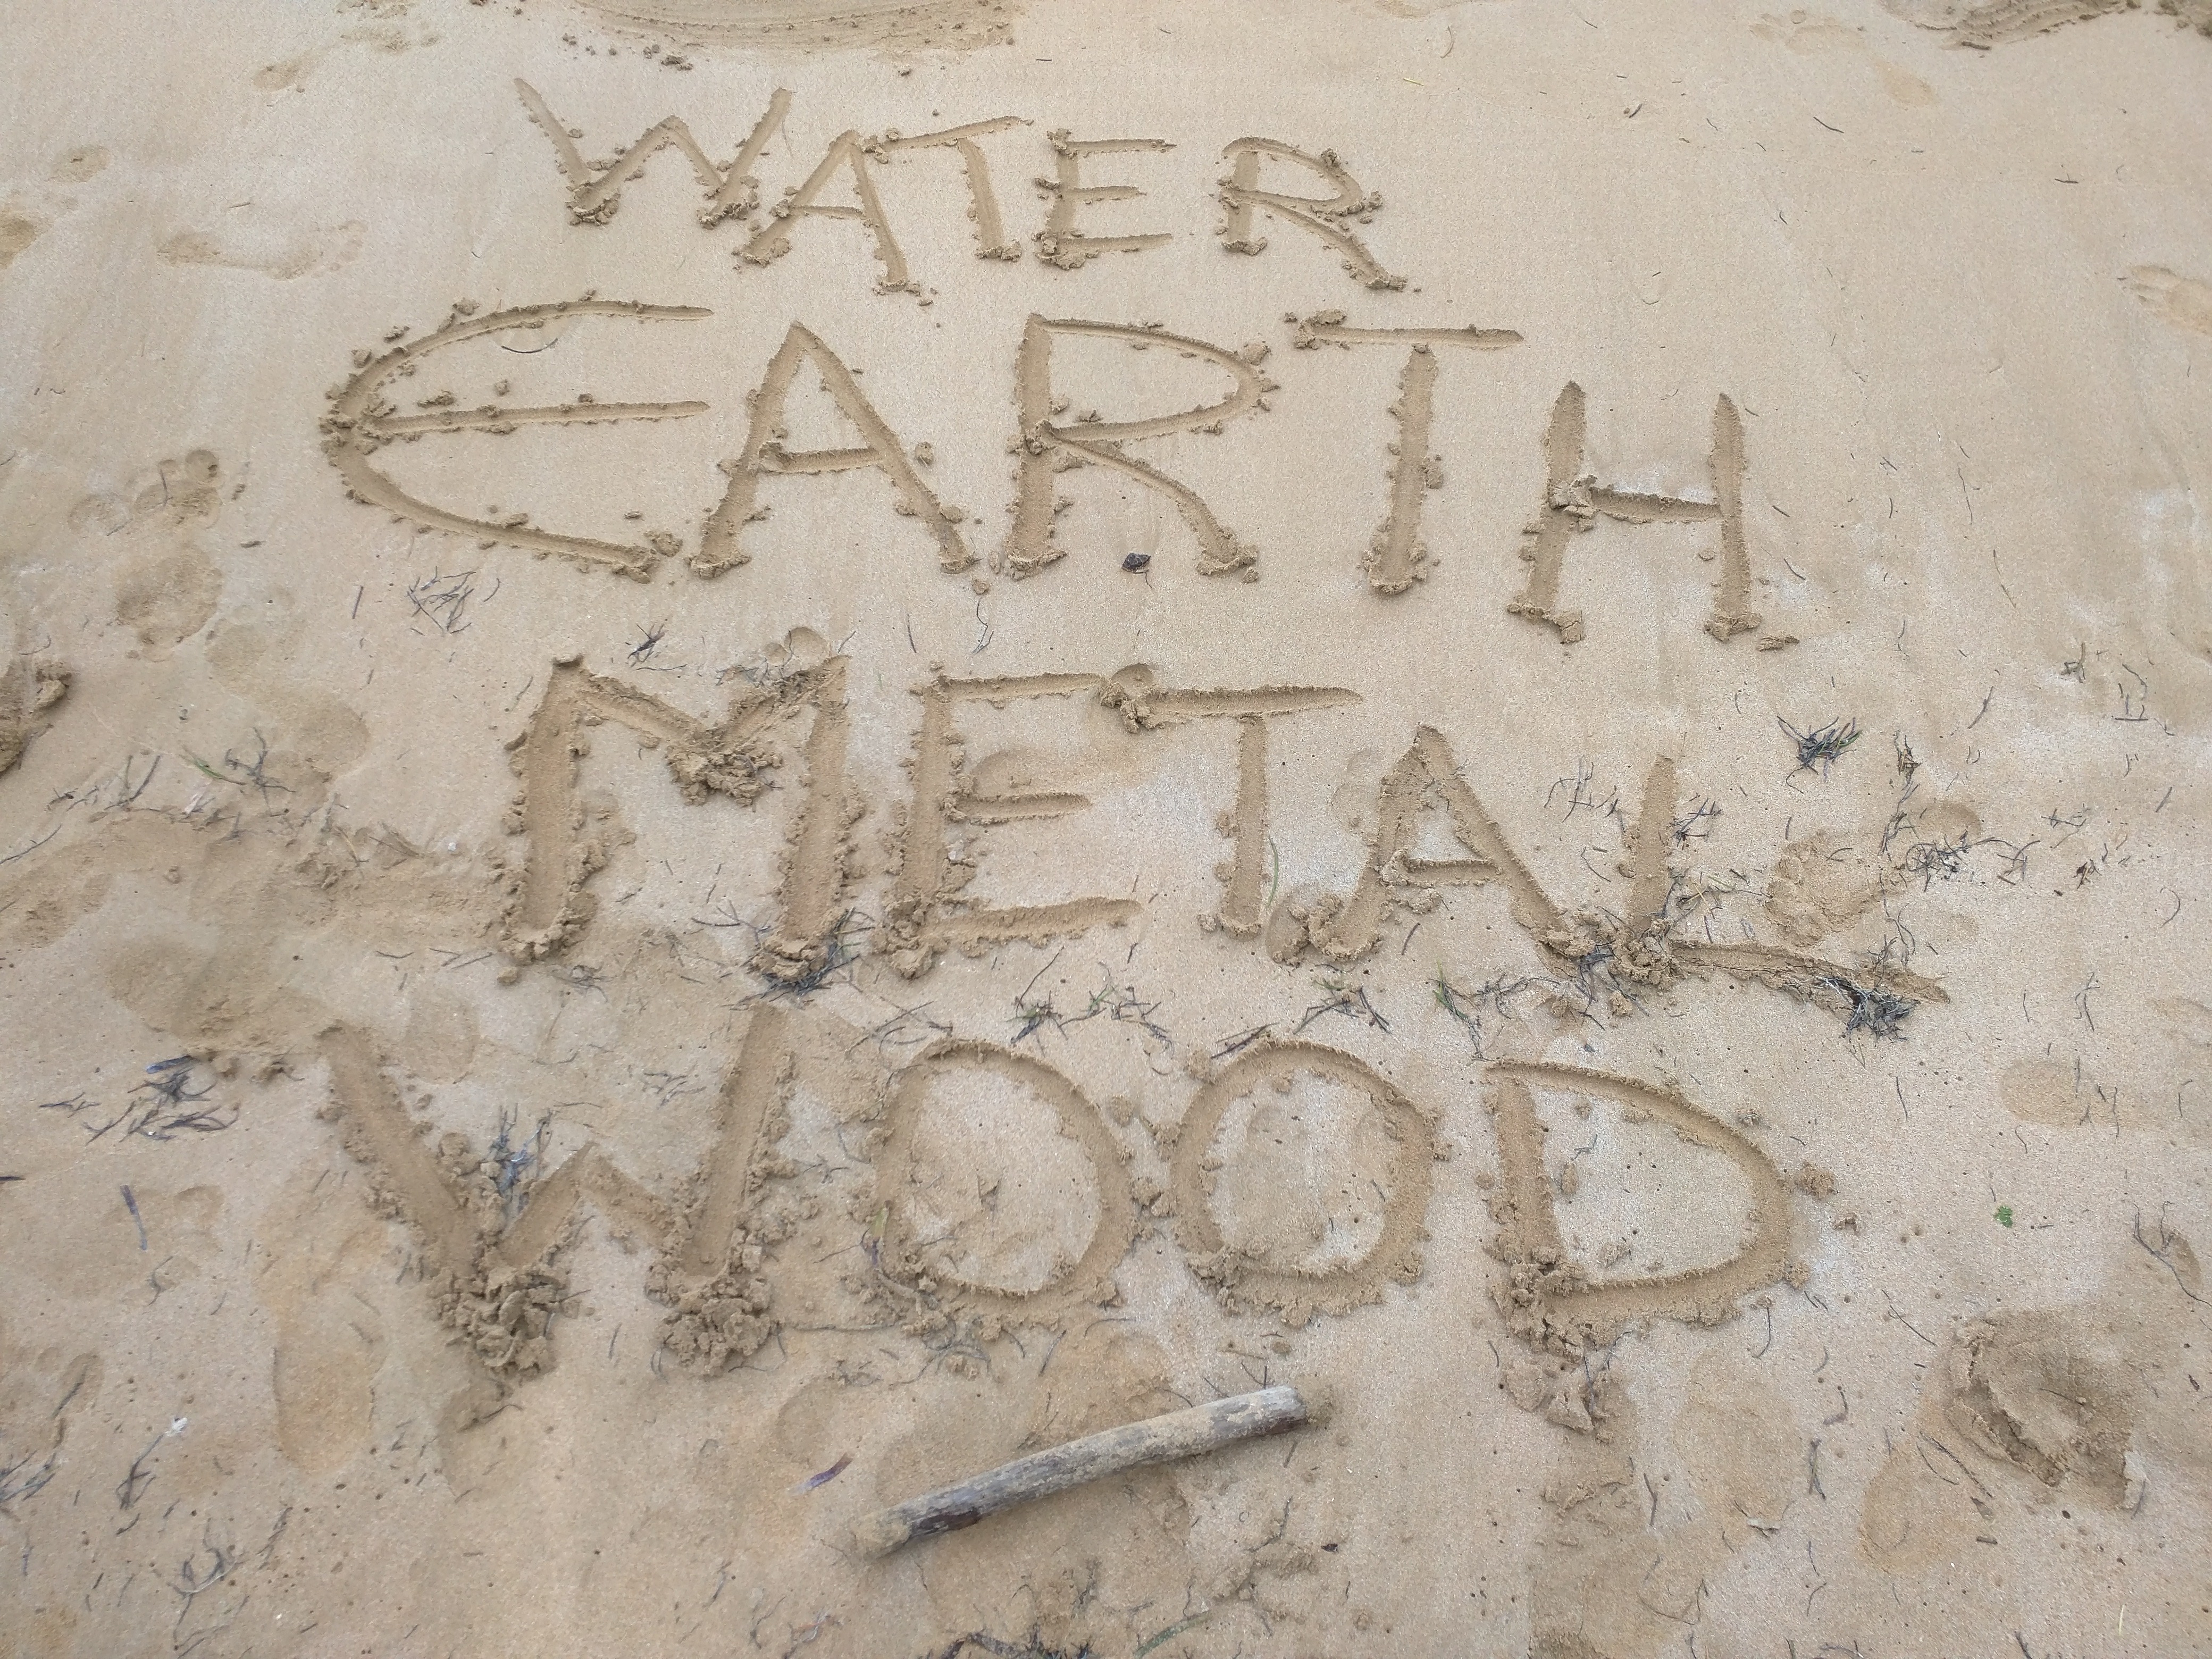 Water, Earth, Metal, Wood